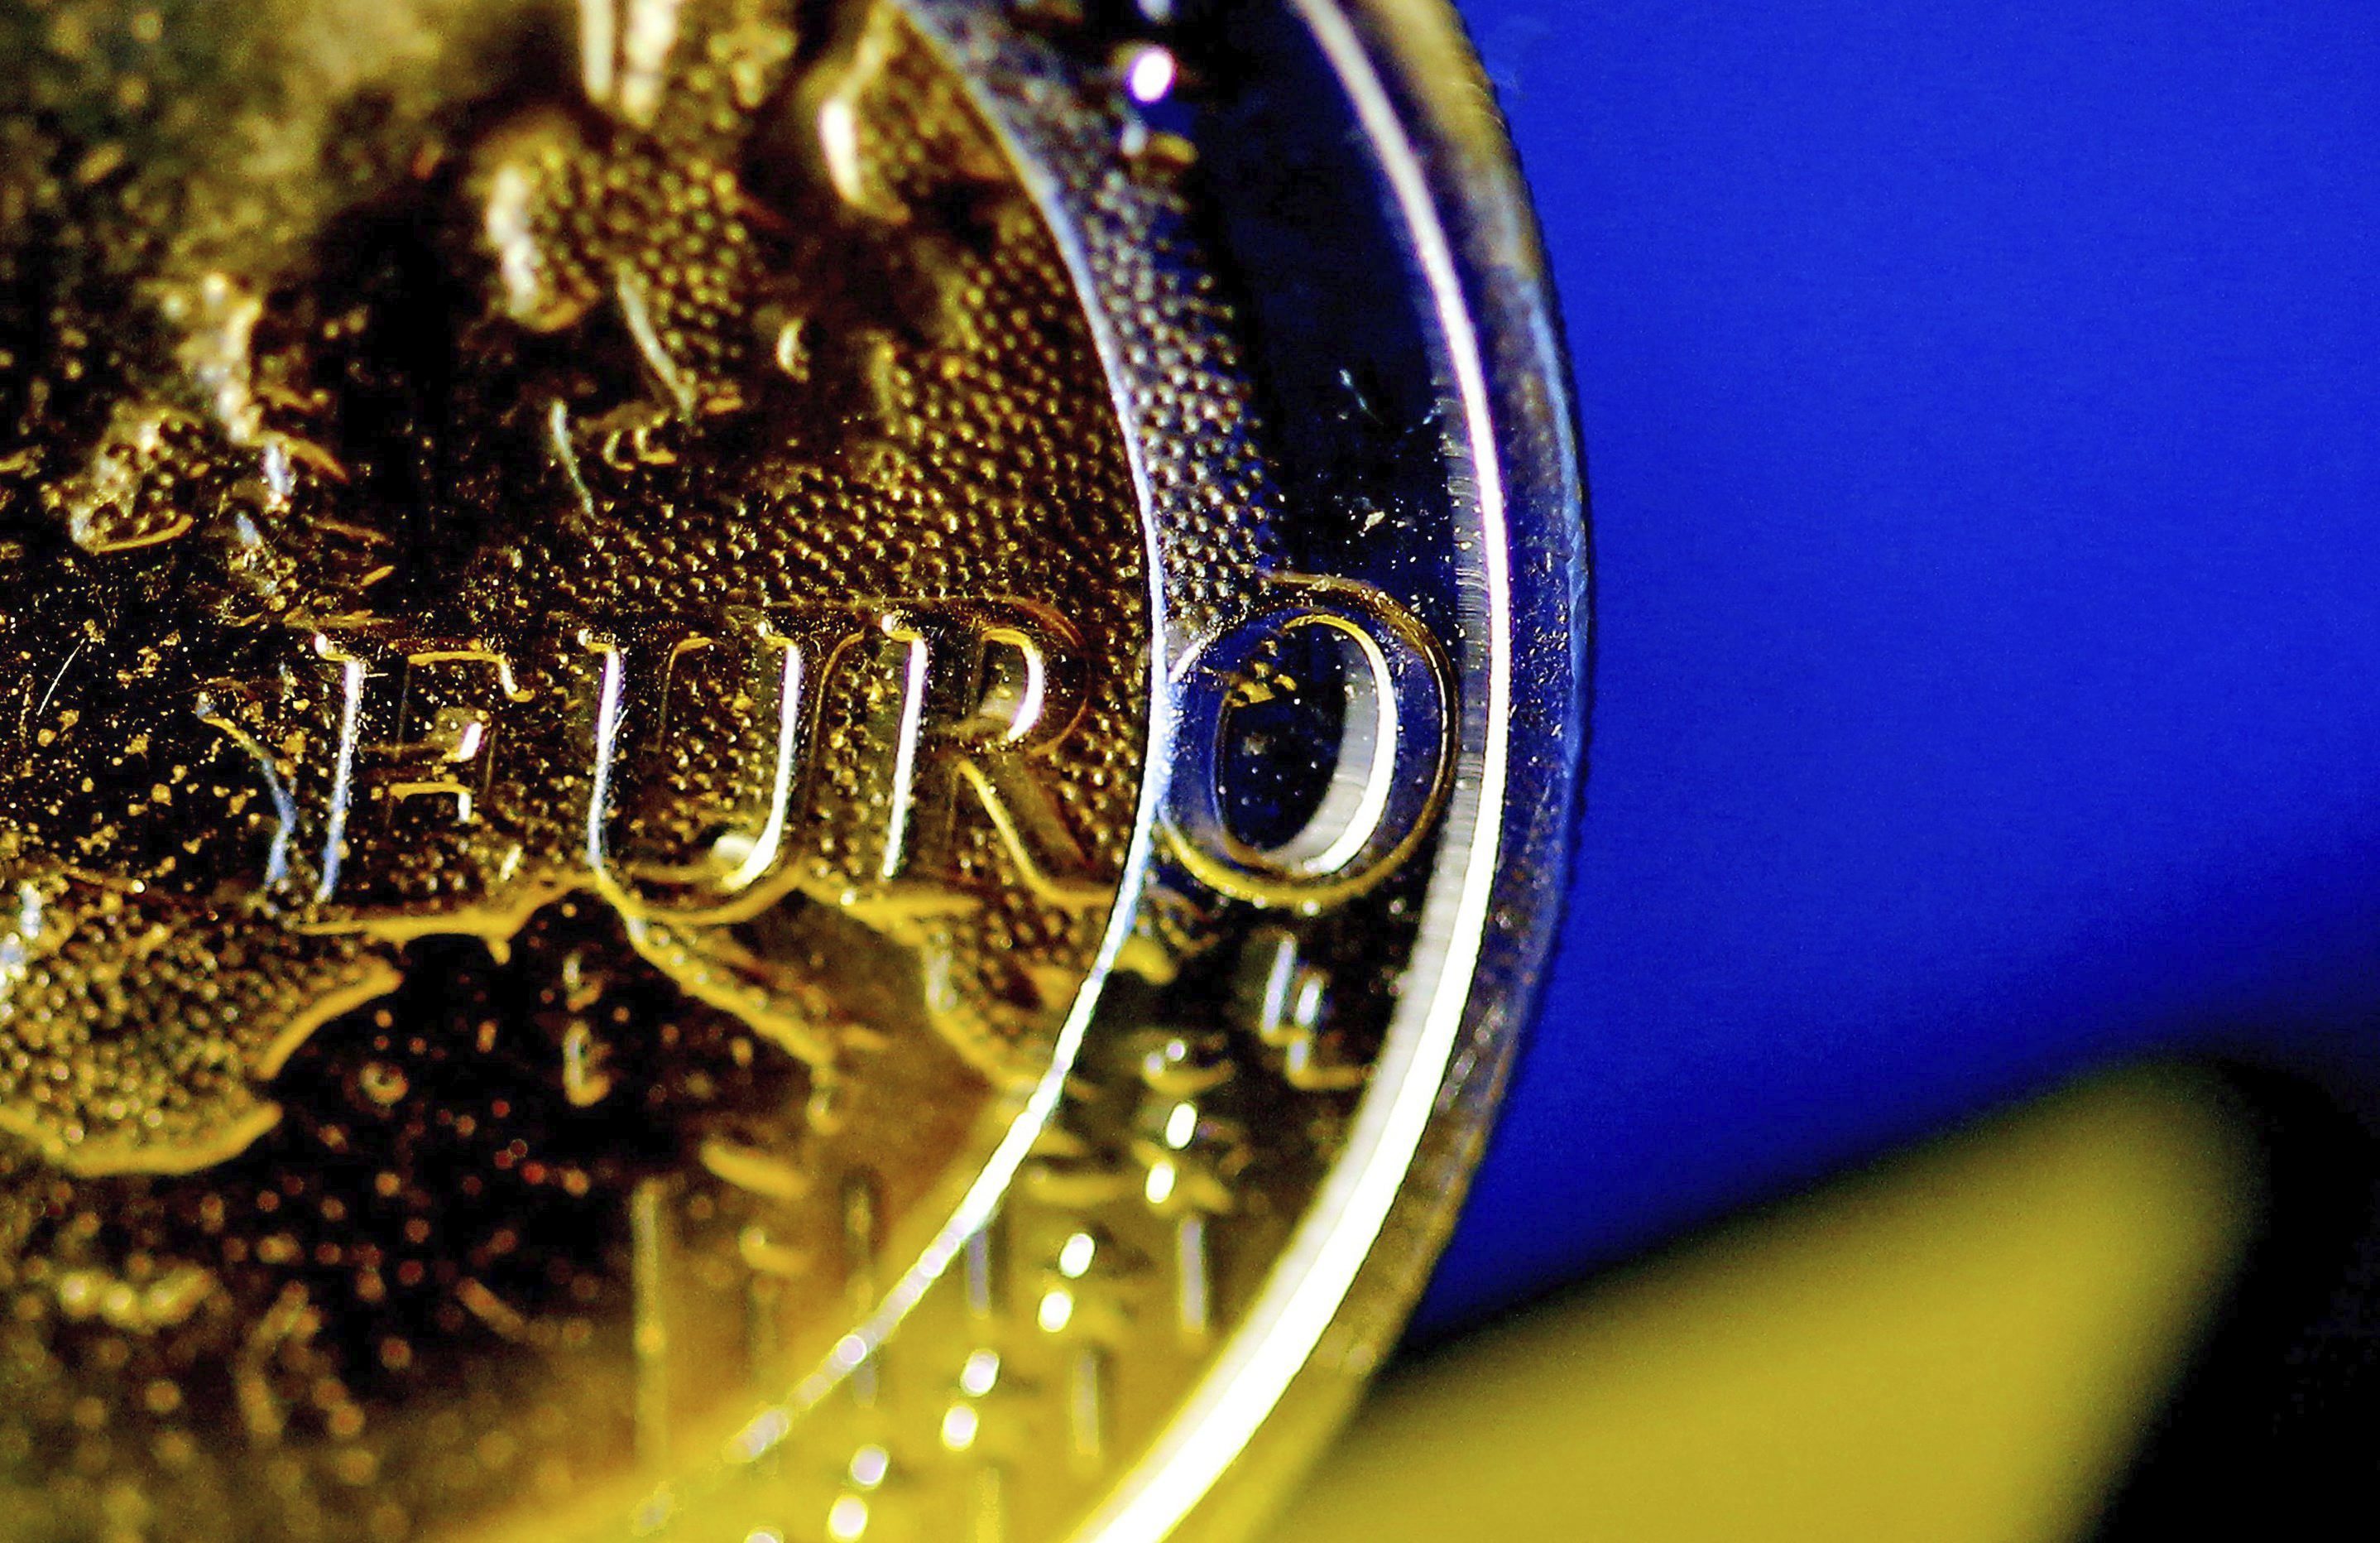 Detalle de una moneda de euro. EFE